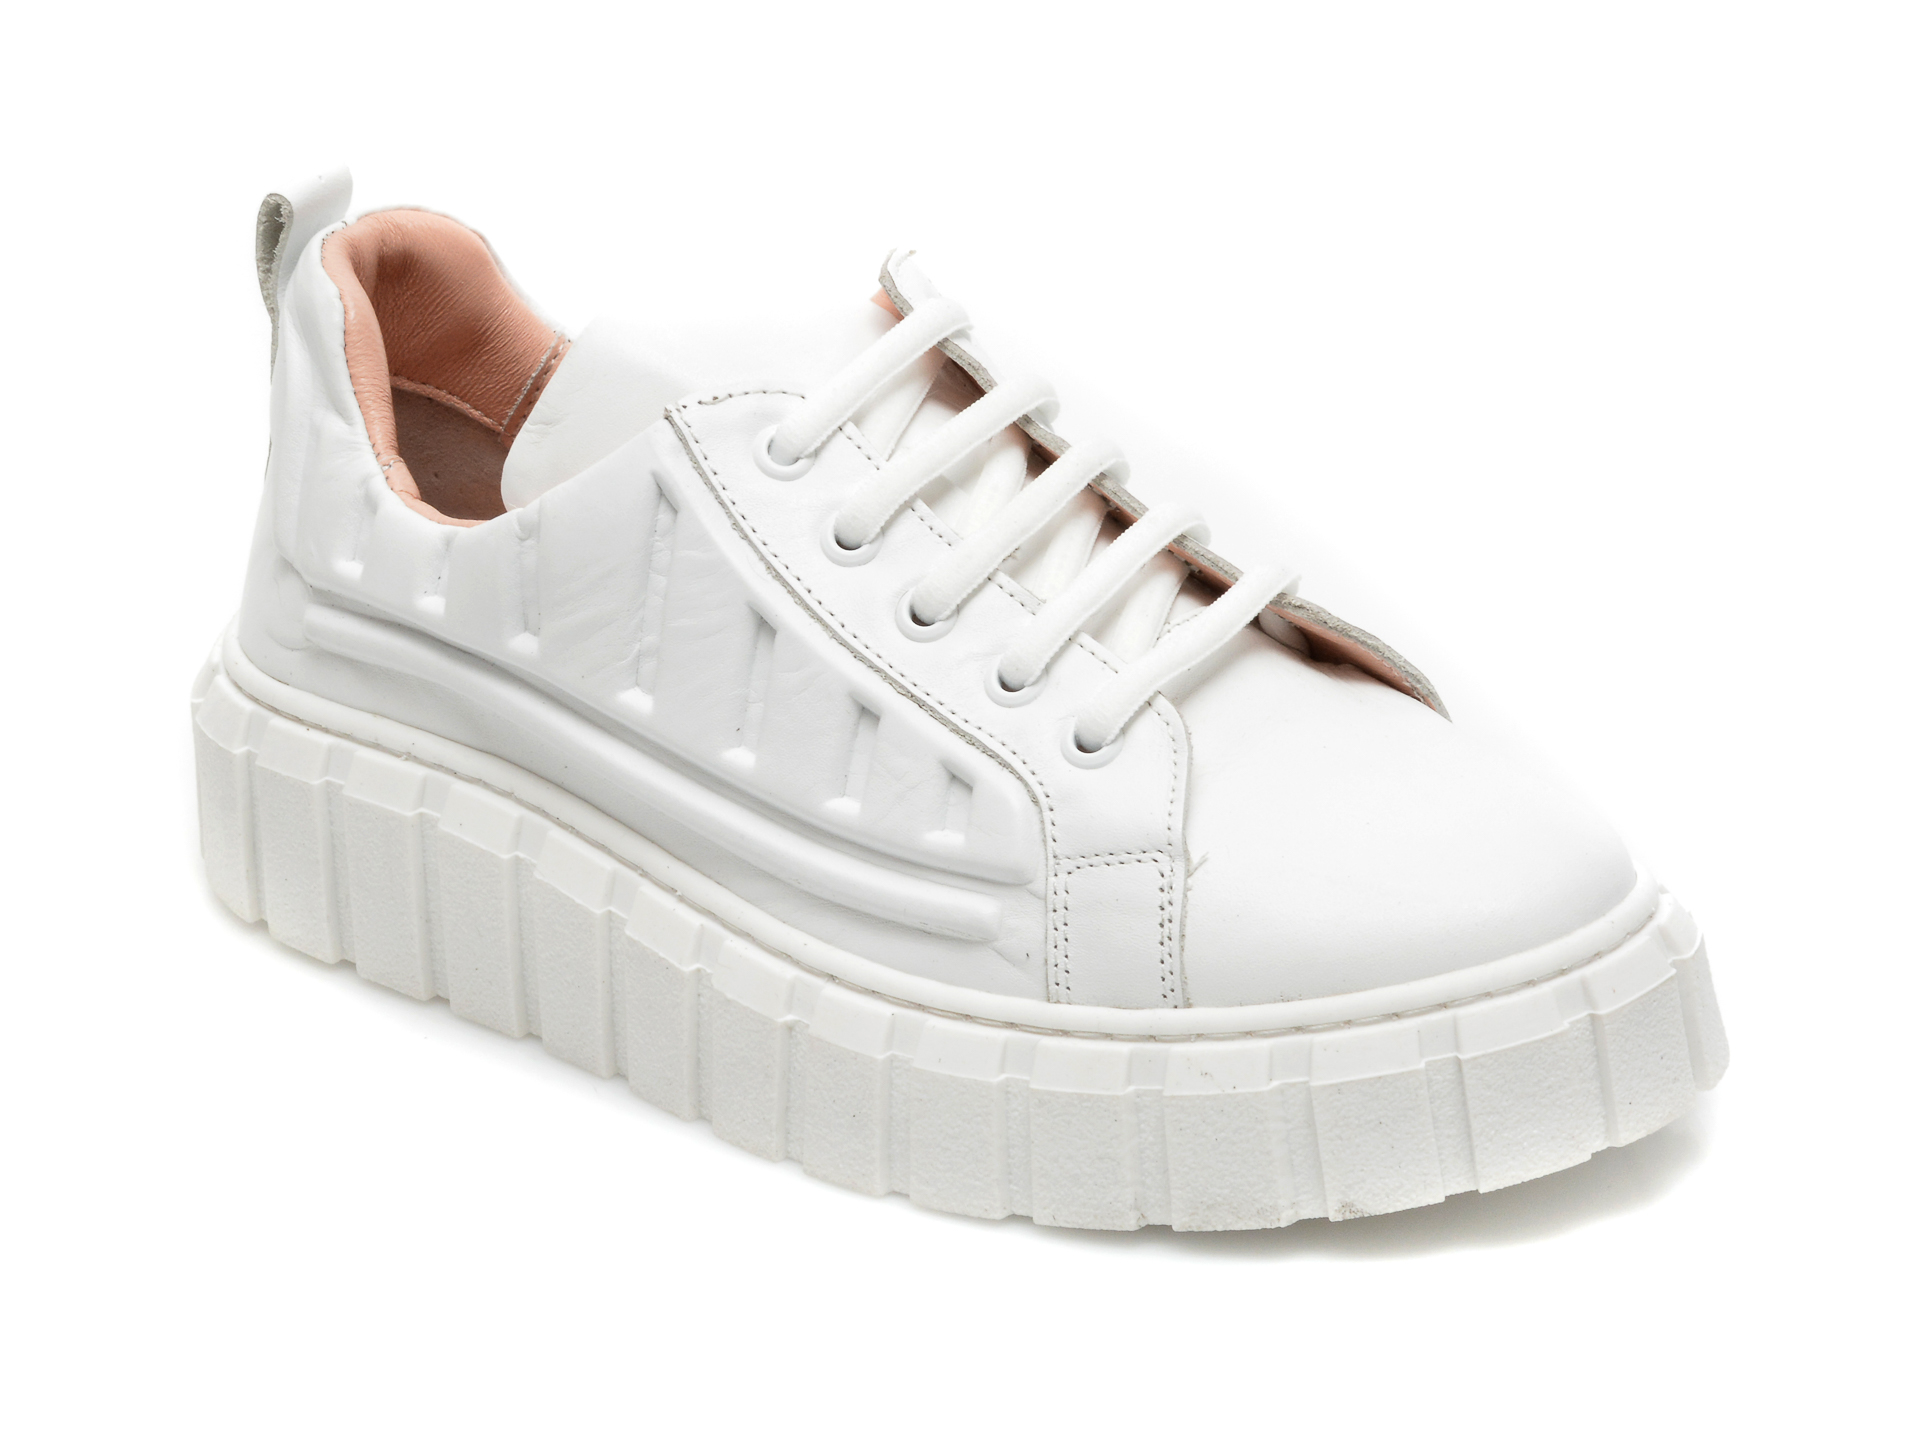 Pantofi FLAVIA PASSINI albi, 922502, din piele naturala Flavia Passini